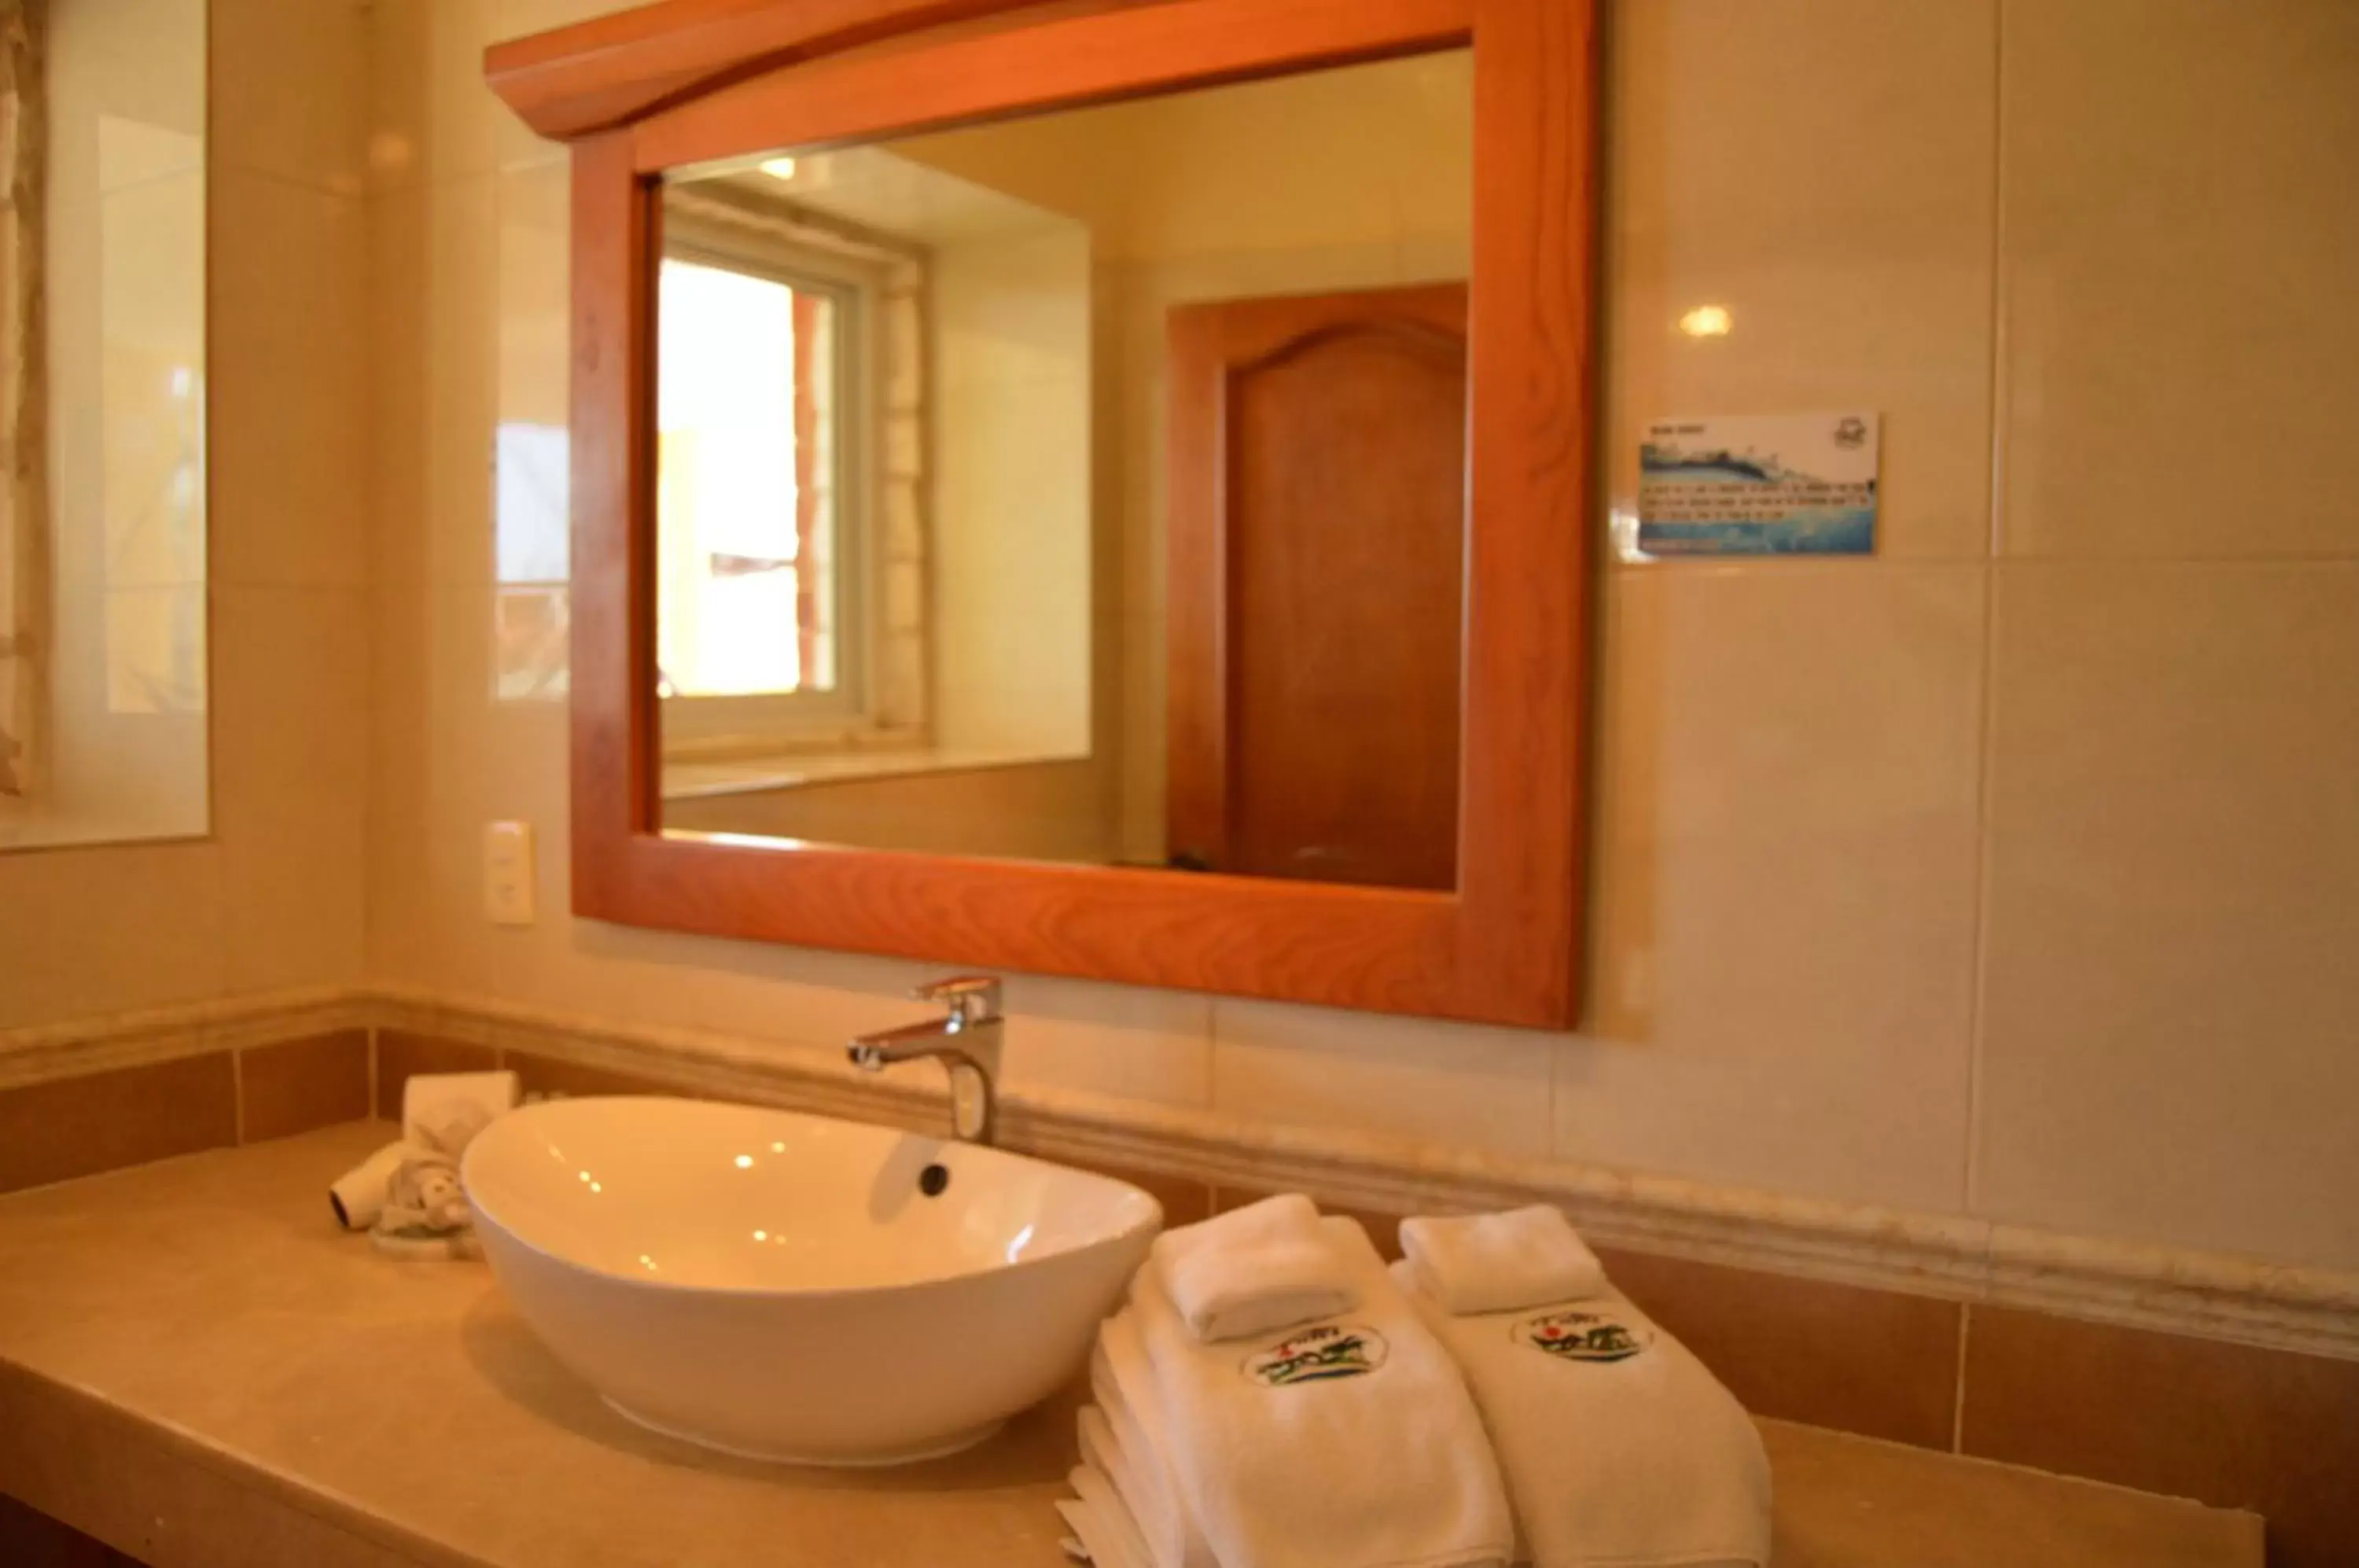 Bathroom in Hotel La Joya Isla Mujeres